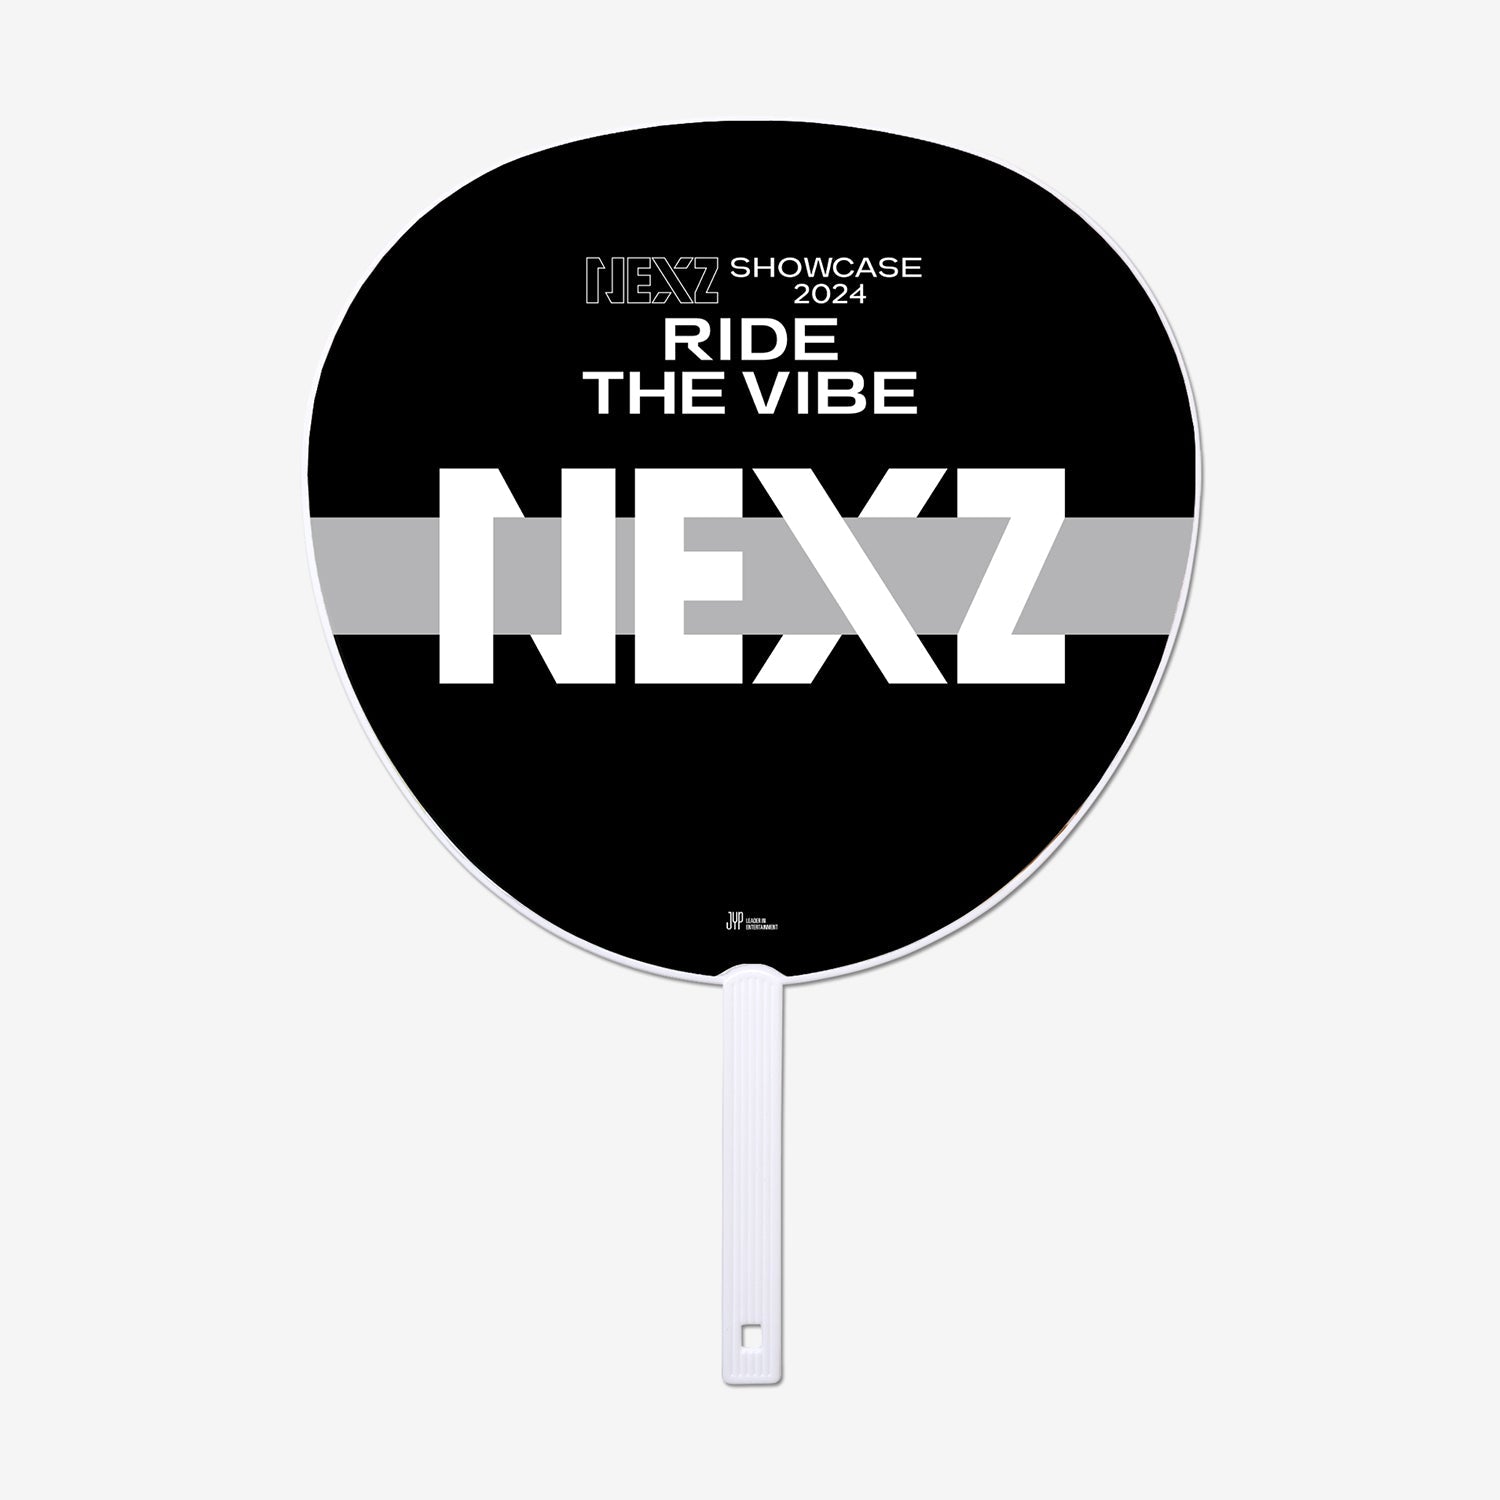 IMAGE PICKET - YU / NEXZ『SHOWCASE 2024 “Ride the Vibe”』